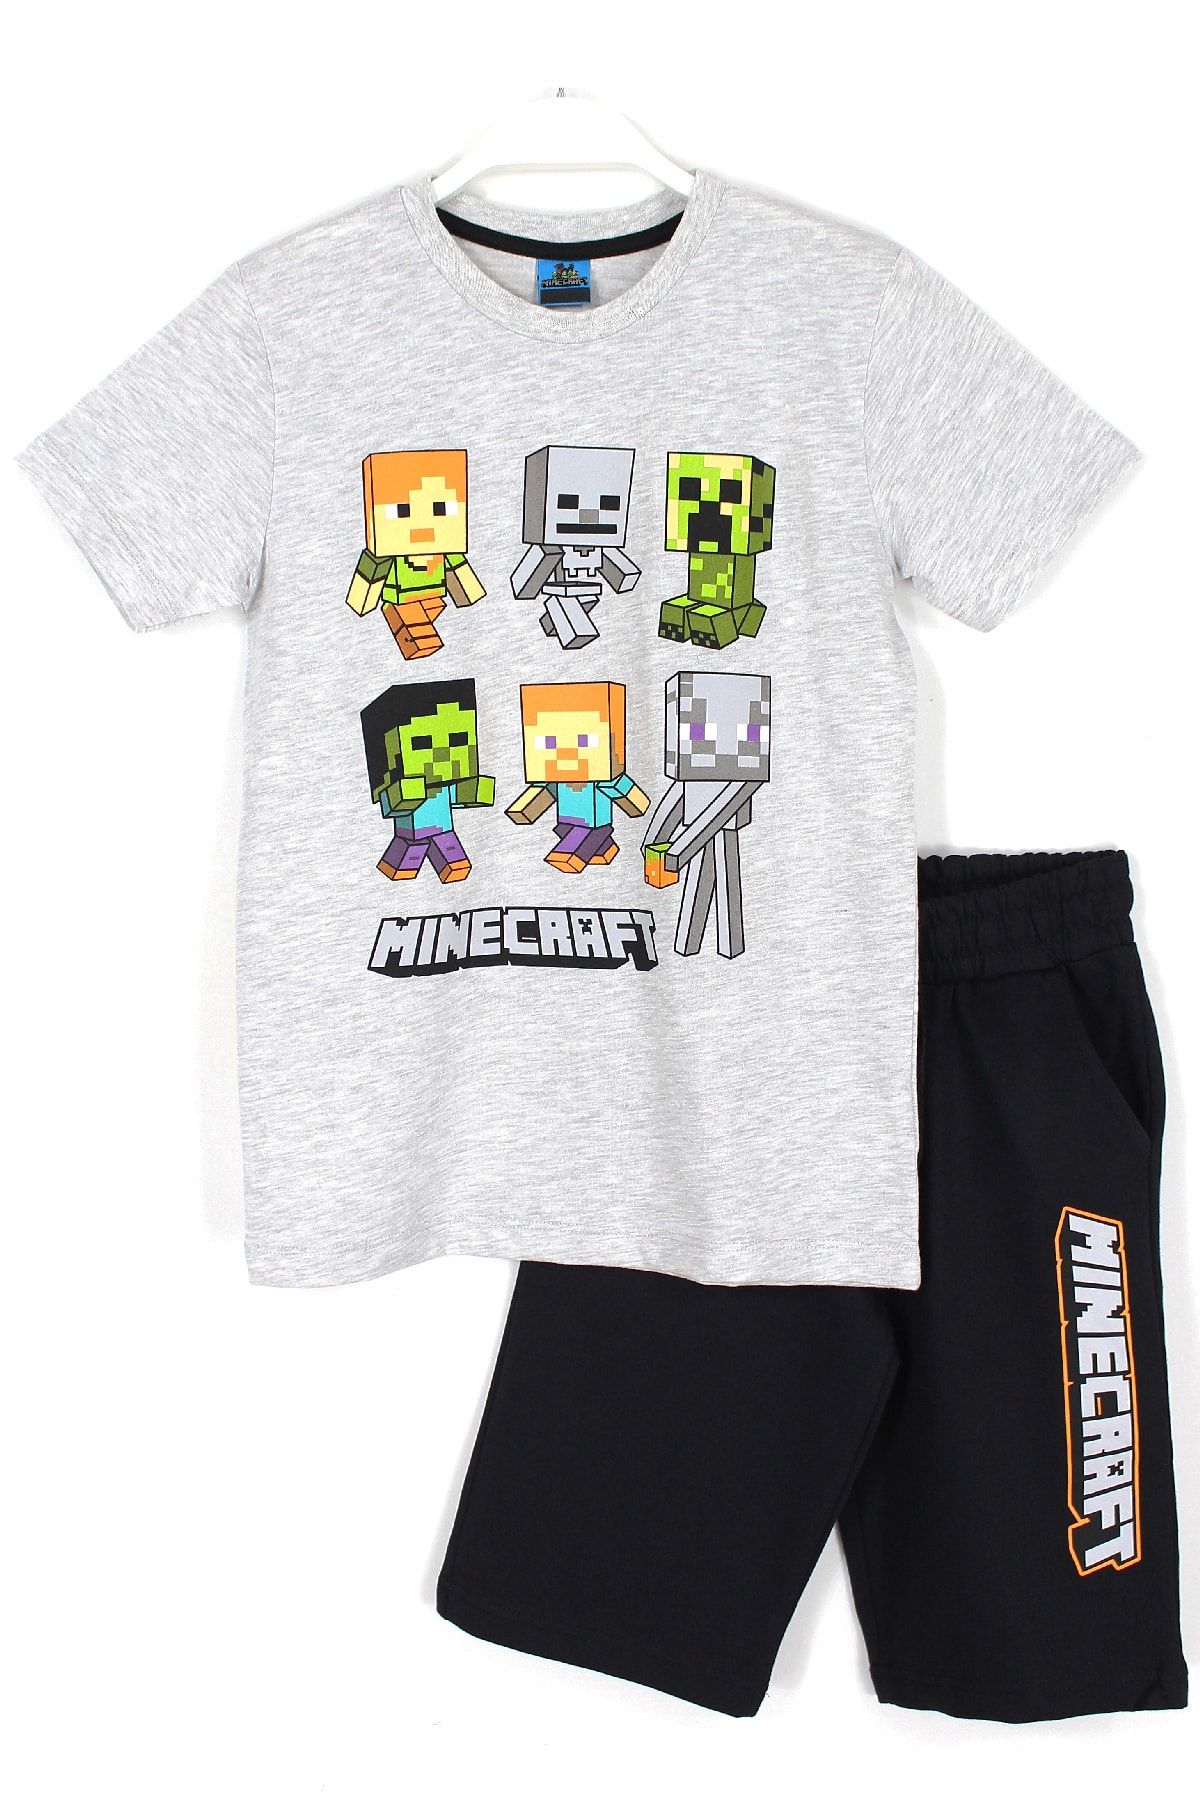 Minecraft Karakterleri Baskılı Erkek Çocuk Kapri T-shirt 2'li Takım Gri Siyah